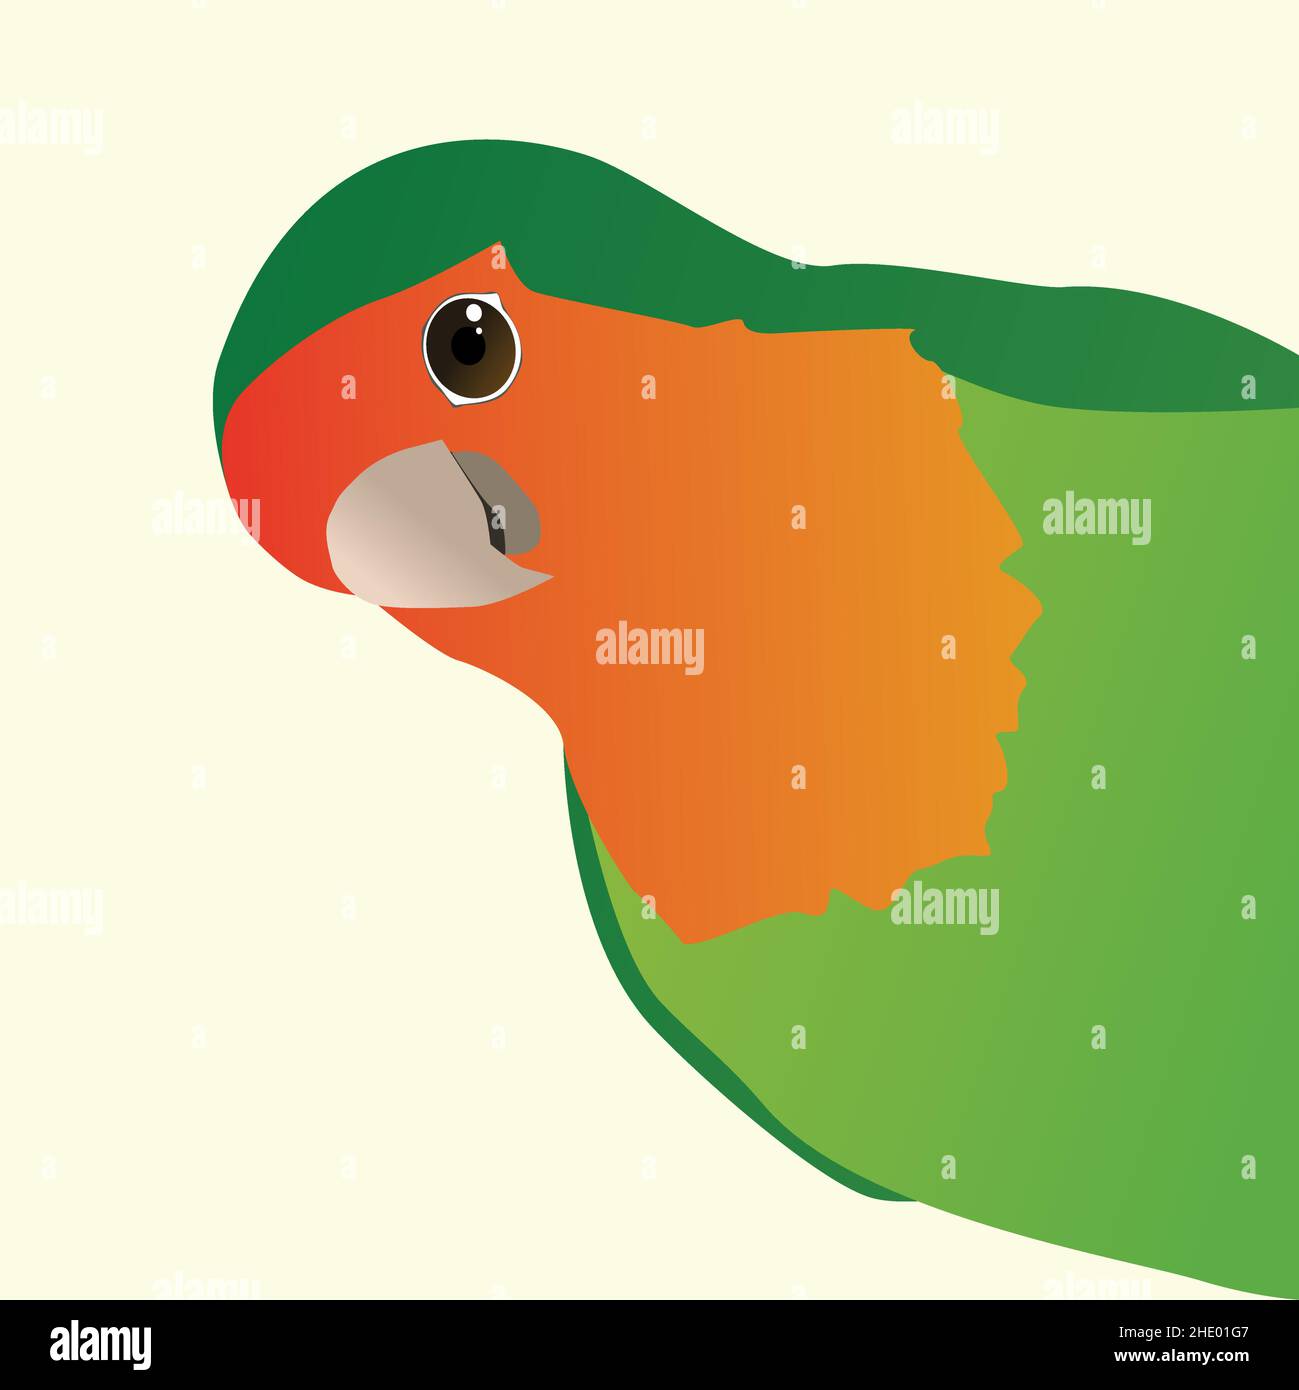 Un dessin vectoriel en couleur d'un oiseau lovebird à face de pêche drôle, également appelé oiseau lovebird à face de rose.L'oiseau rouge vert regarde du côté droit de la piquante Illustration de Vecteur